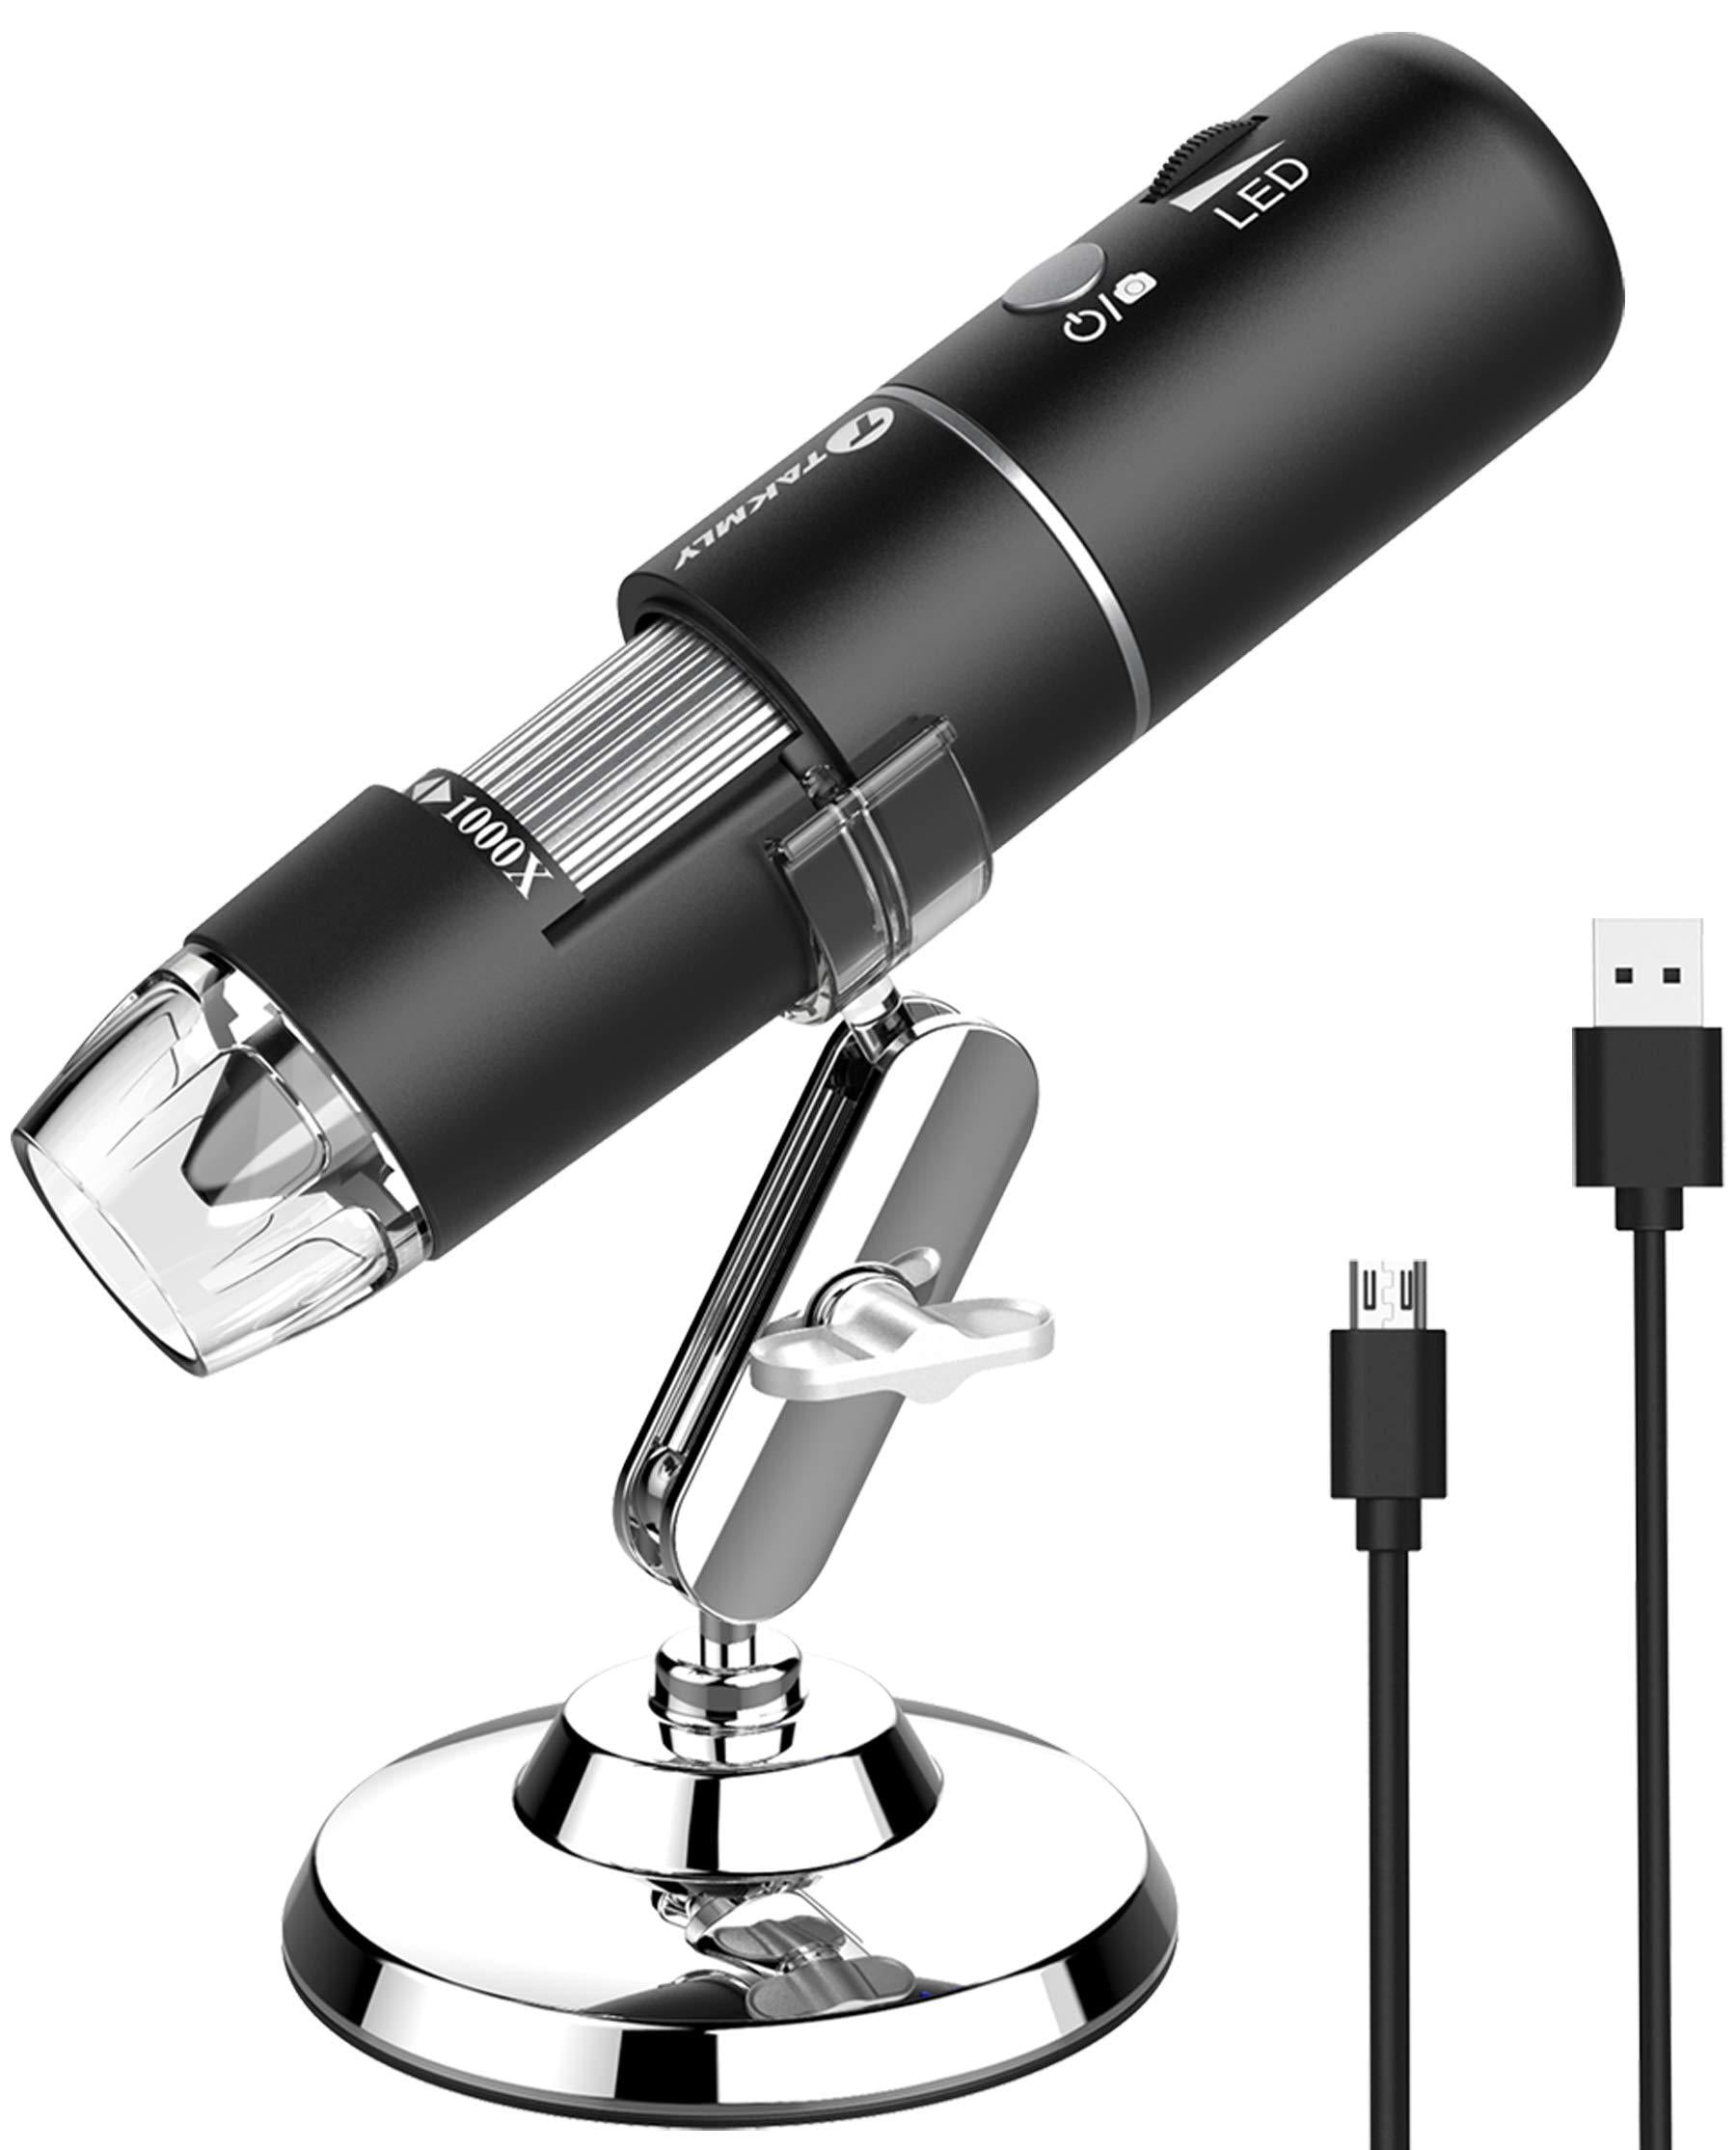 VEVOR Microscope Numérique USB Wifi Portable Endoscope de Grossissement  50X-1000X Fonctions Photo & Vidéo Connecté au PC Téléphone Portable  Compatible avec IOS 8,0/Android 4,0 Observation Extérieur